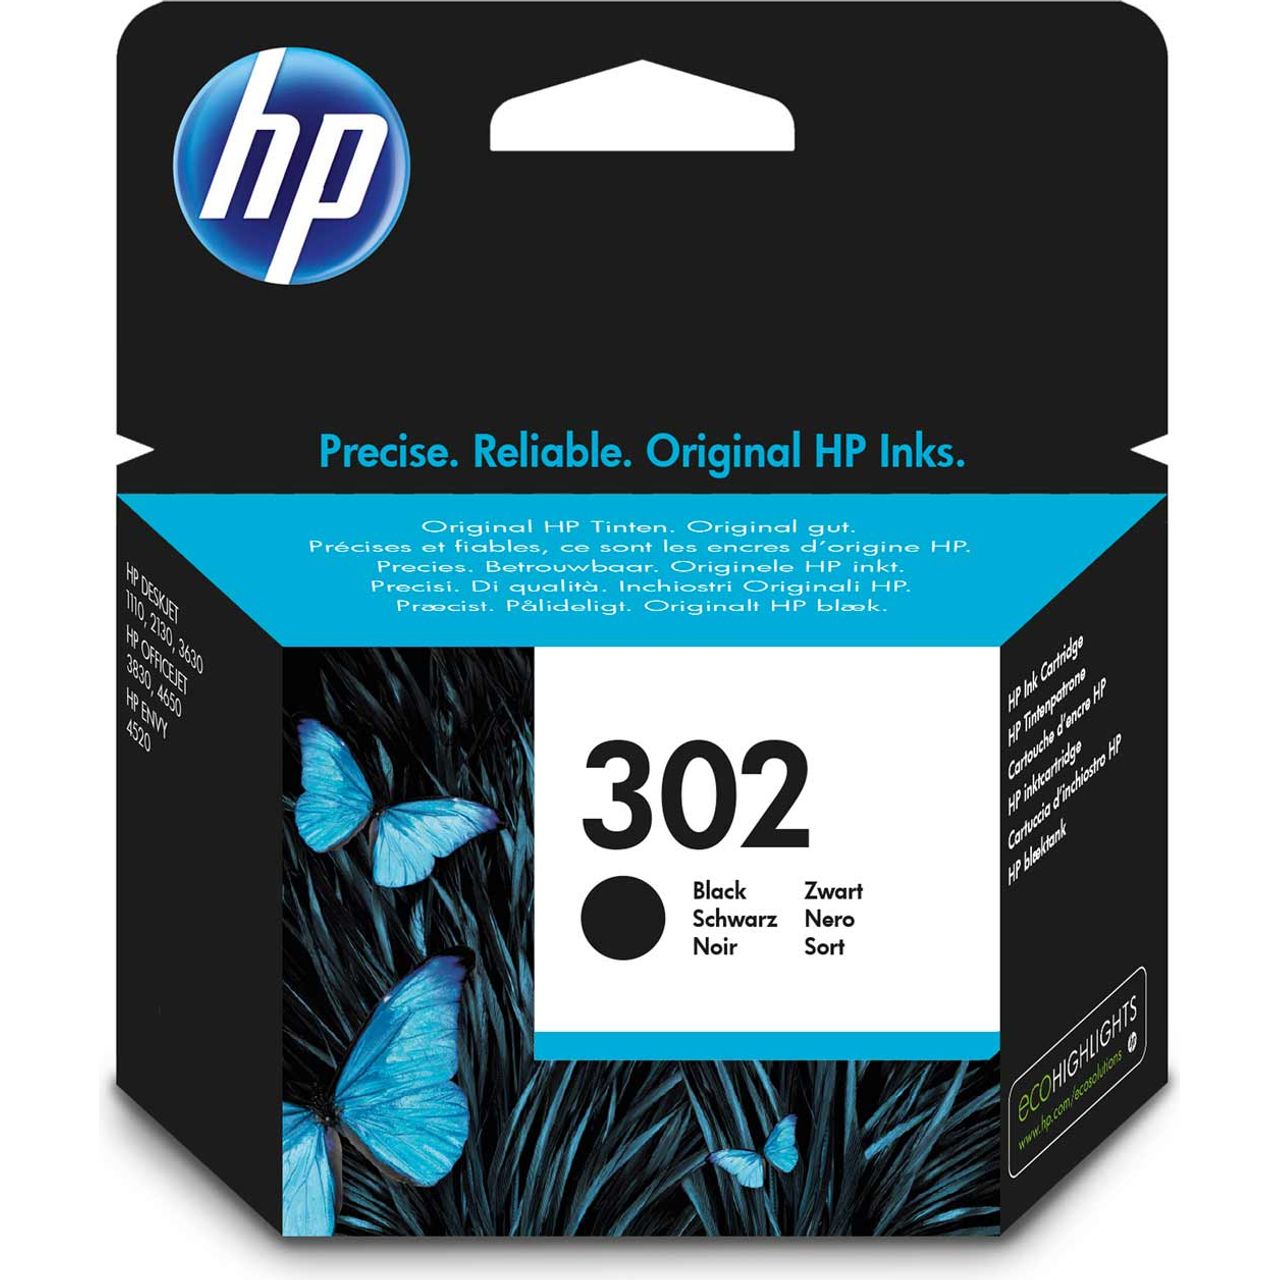 HP 302 Black Original Ink Cartridge Review